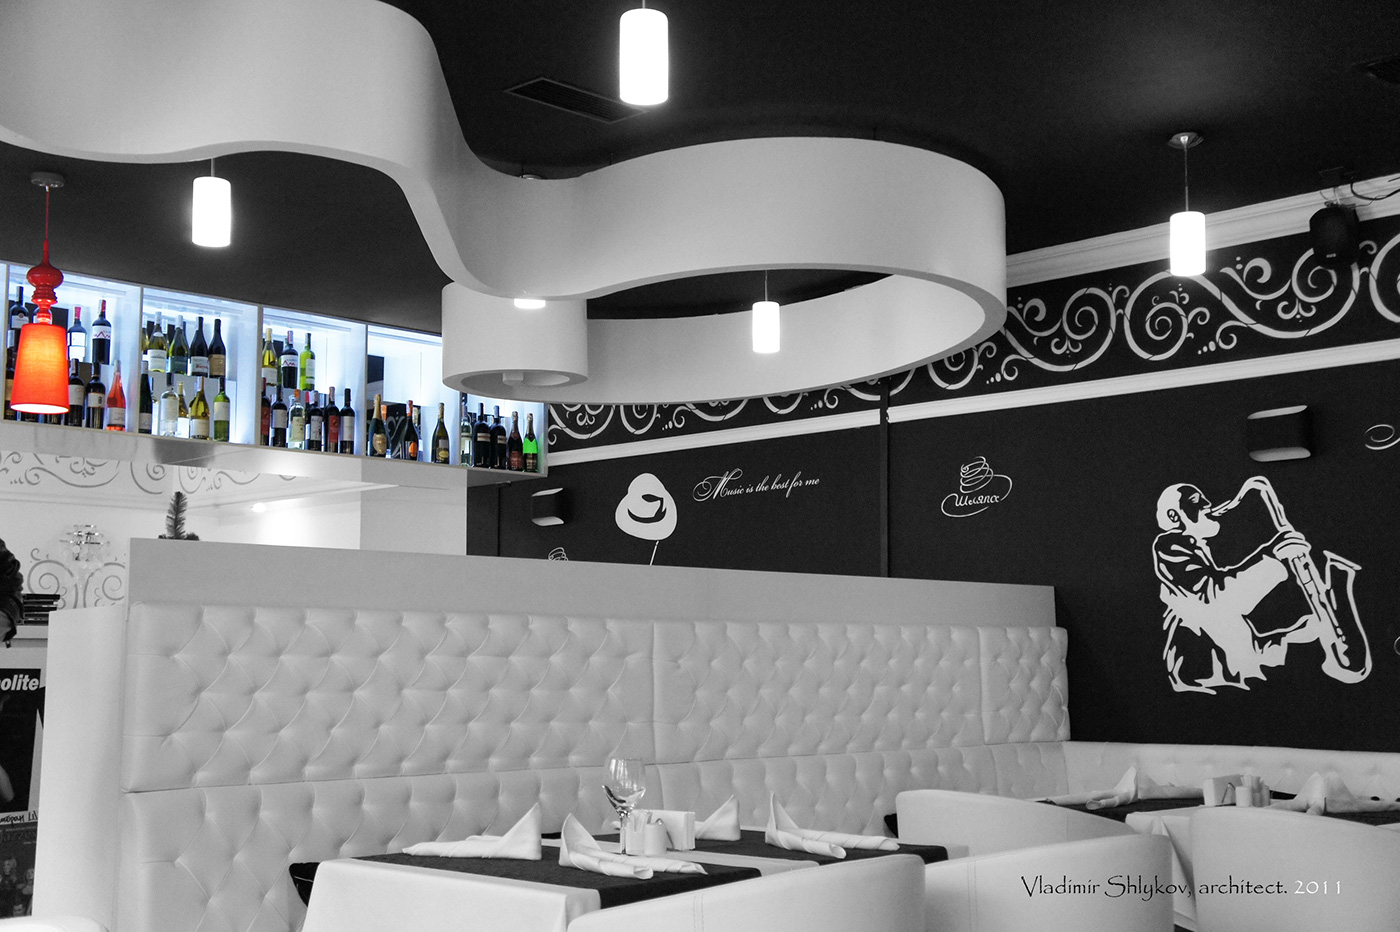 ресторан дизайн ресторана рисунки на стенах обеденный зал островной бар зеркальная стена ремонт ресторана современный интерьер заказать интерьер Restaurant design.